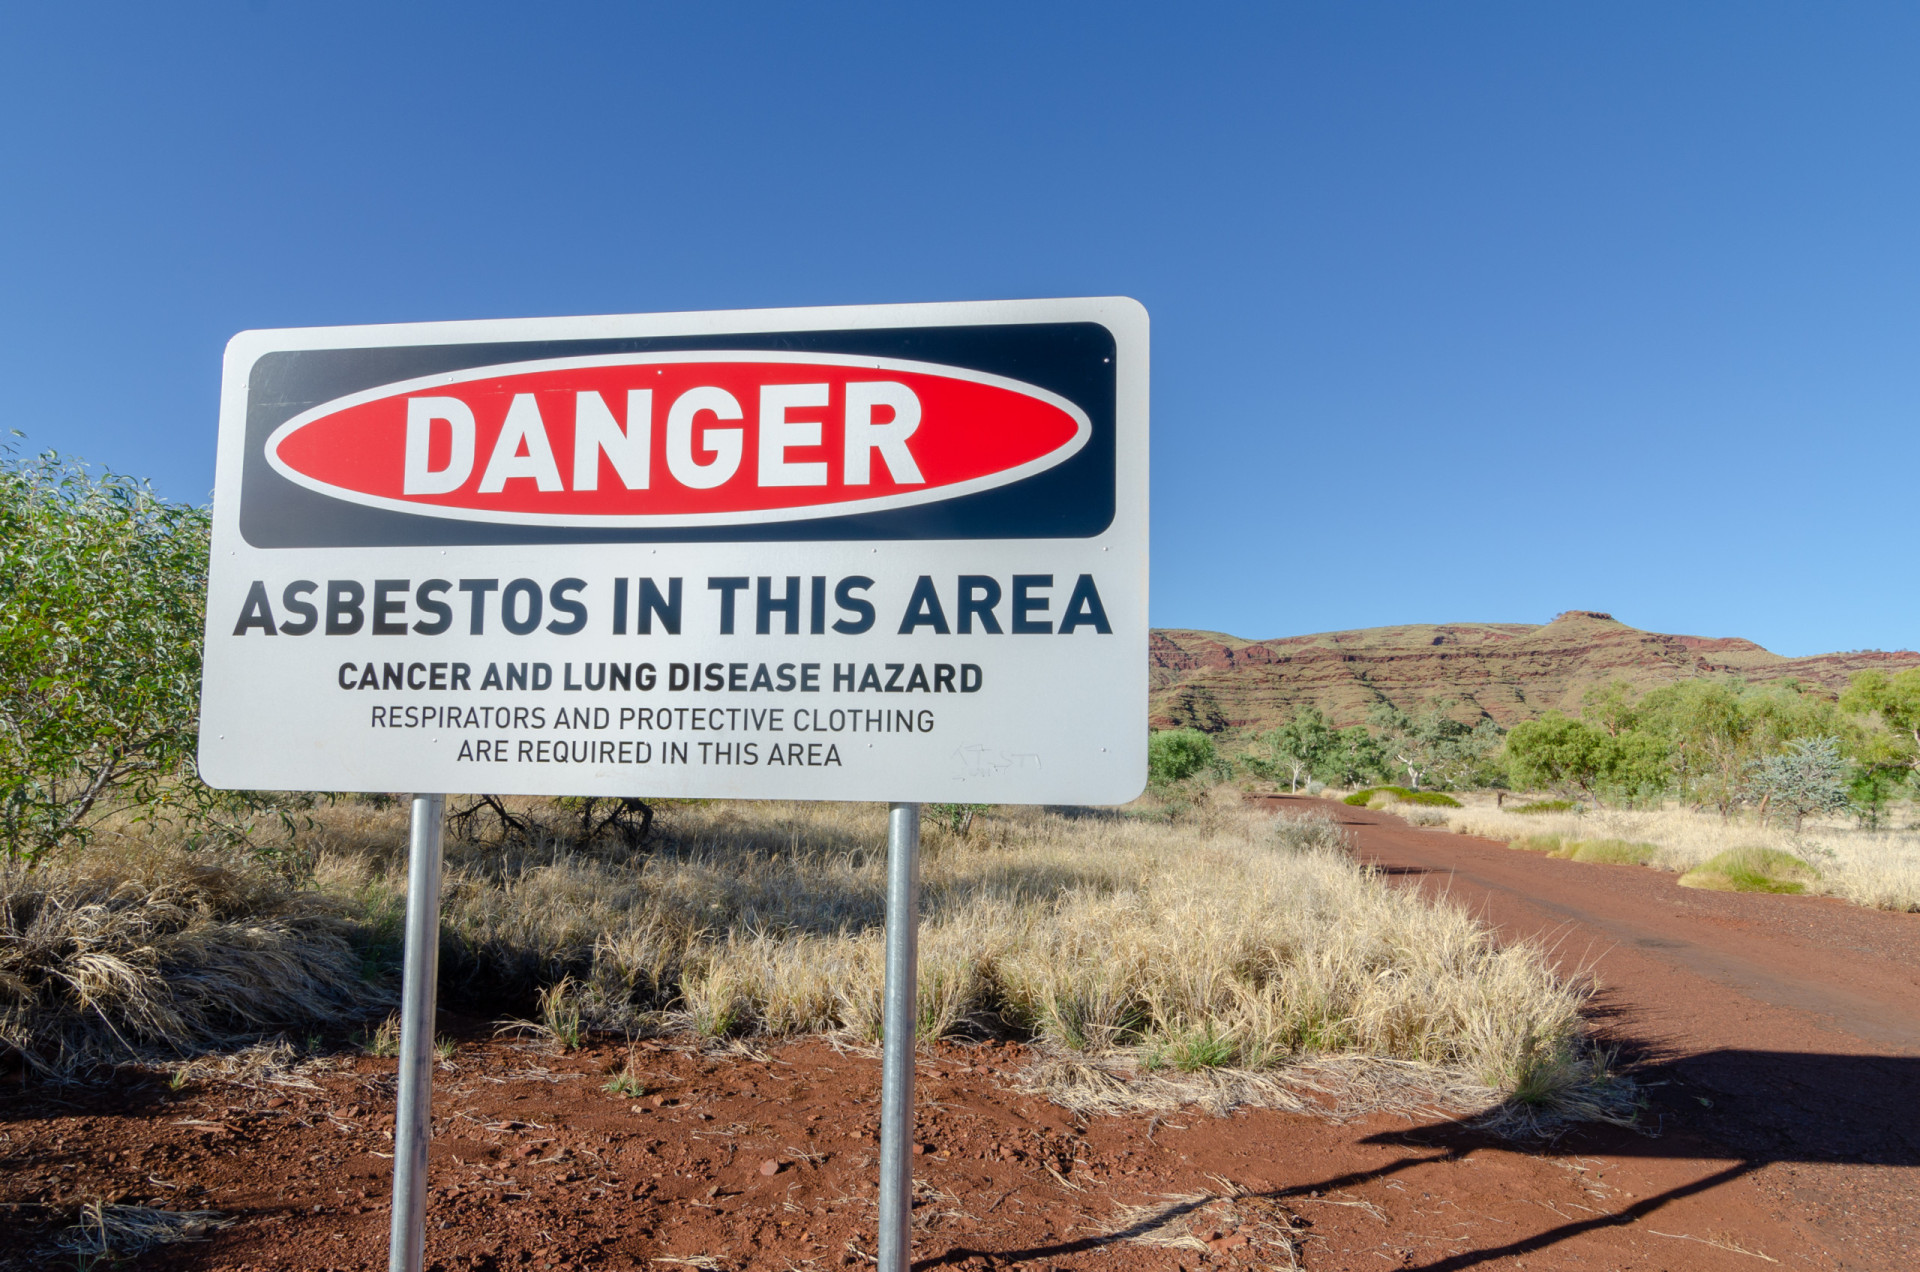 <p>Wittenoom, en Australie occidentale, a le douteux honneur d'être le "plus grand site contaminé de l'hémisphère sud". L'amiante bleu y a été exploité bien avant que l'on ne prenne conscience de ses propriétés nocives. Aujourd'hui, seuls les imbéciles s'aventurent au-delà des panneaux d'avertissement sans prendre de précautions.</p> <p>Sources: (CNN) (IUCN) (American Battlefield Trust) (The Guardian)</p>